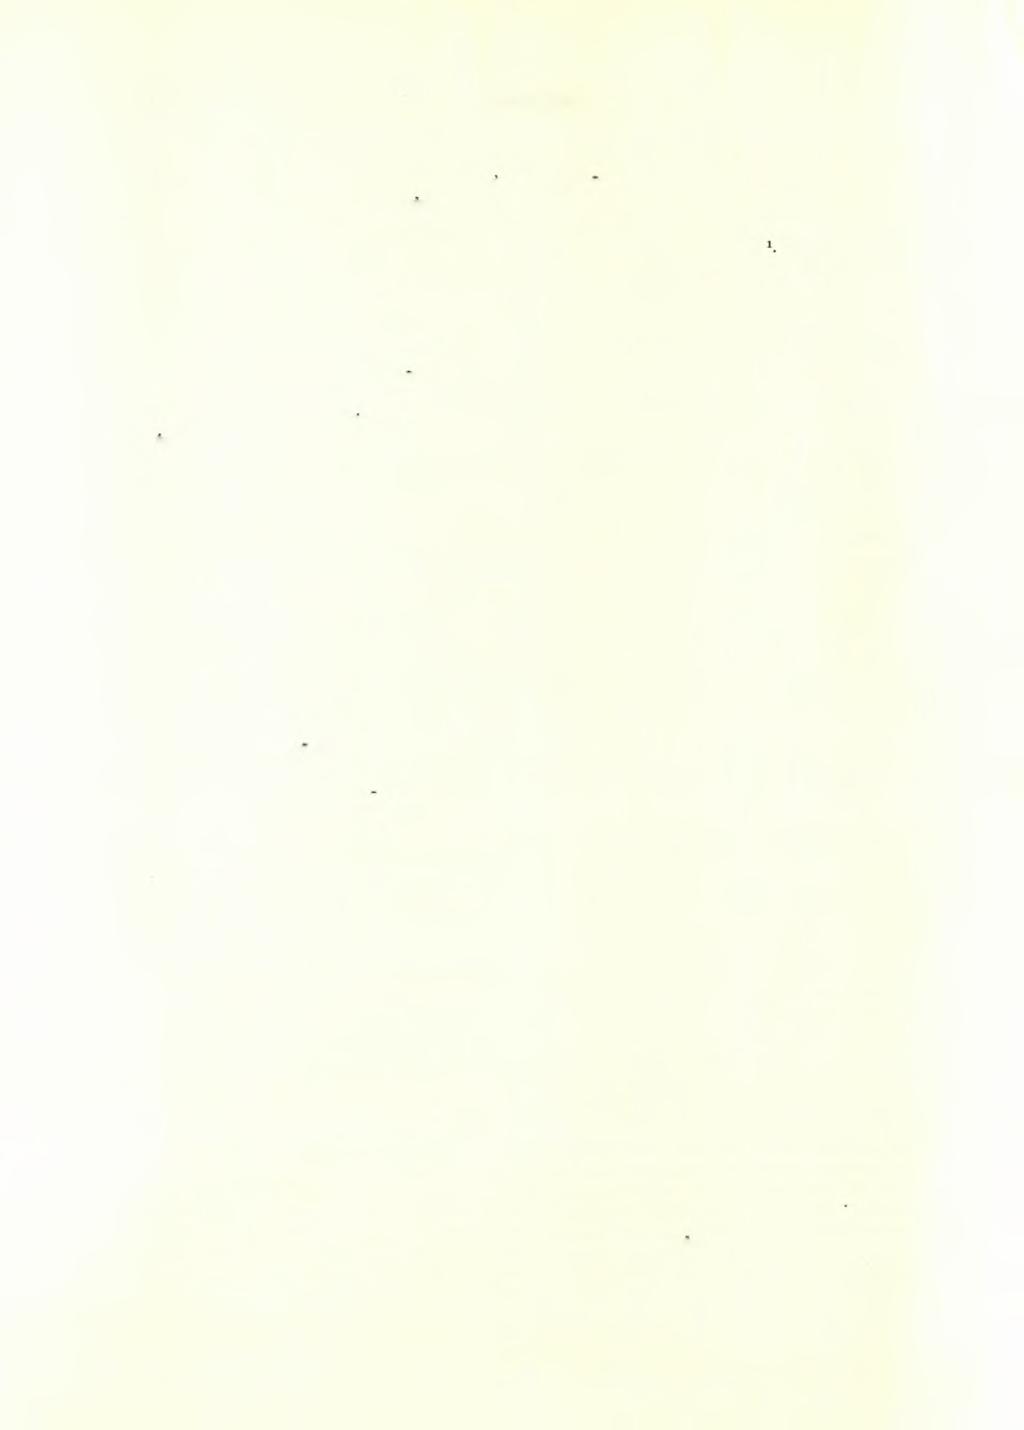 182 ΑΡΧΑΙΟΛΟΓΙΚΟΝ ΔΕΛΤΙΟΝ 17 (1961/2) : ΧΡΟΝΙΚΑ βαίνων καθέτως πρός τήν Ανατολικήν στοάν, προΰπήρχε τής κατασκευής ταύτης, διότι και οί τοίχοι της πατοϋν έπ αύτοϋ καί αυτός ούτος παρουσιάζει διάφορον